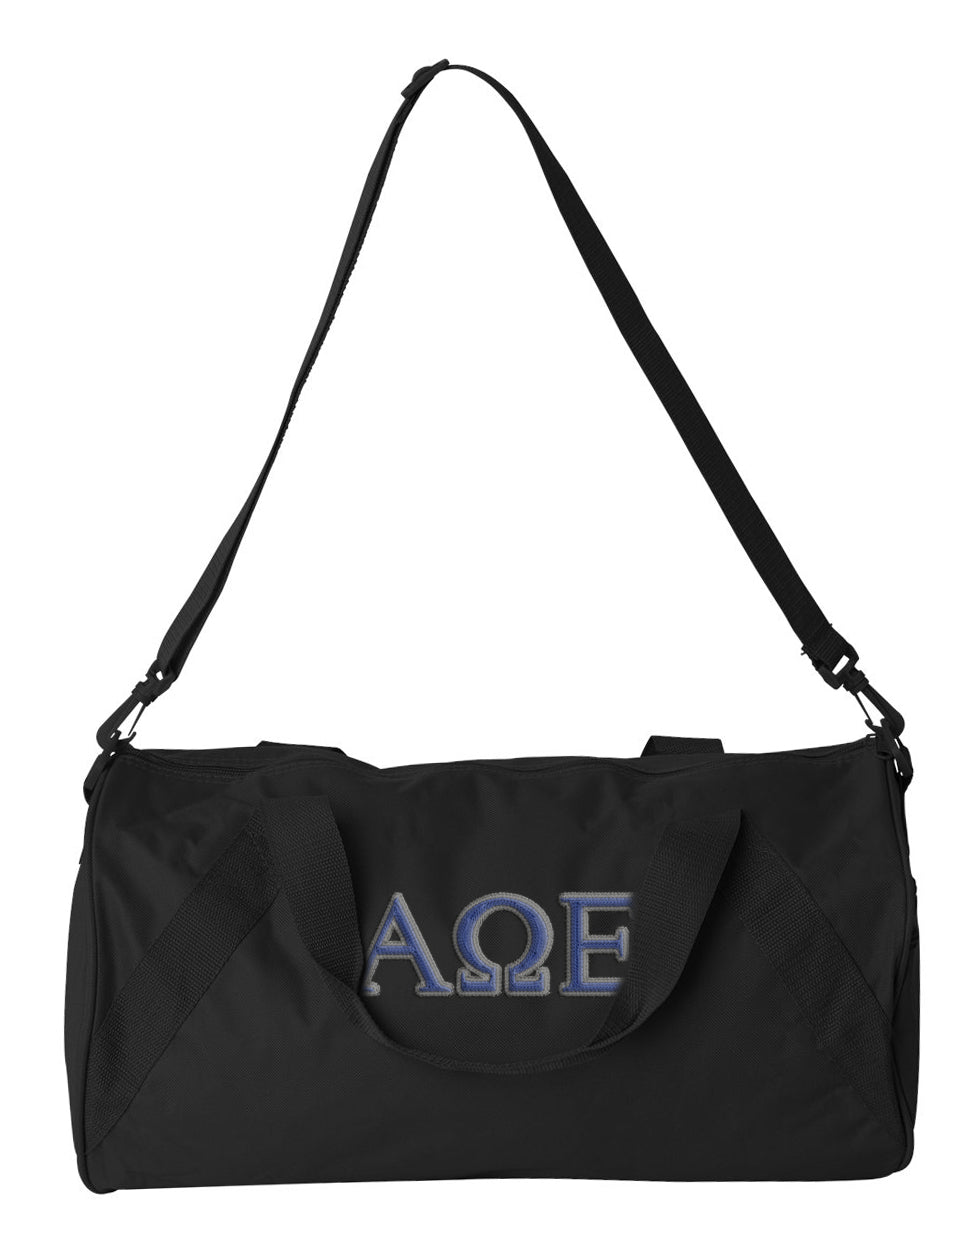 Alpha Omega Epsilon Embroidered Duffel Bag